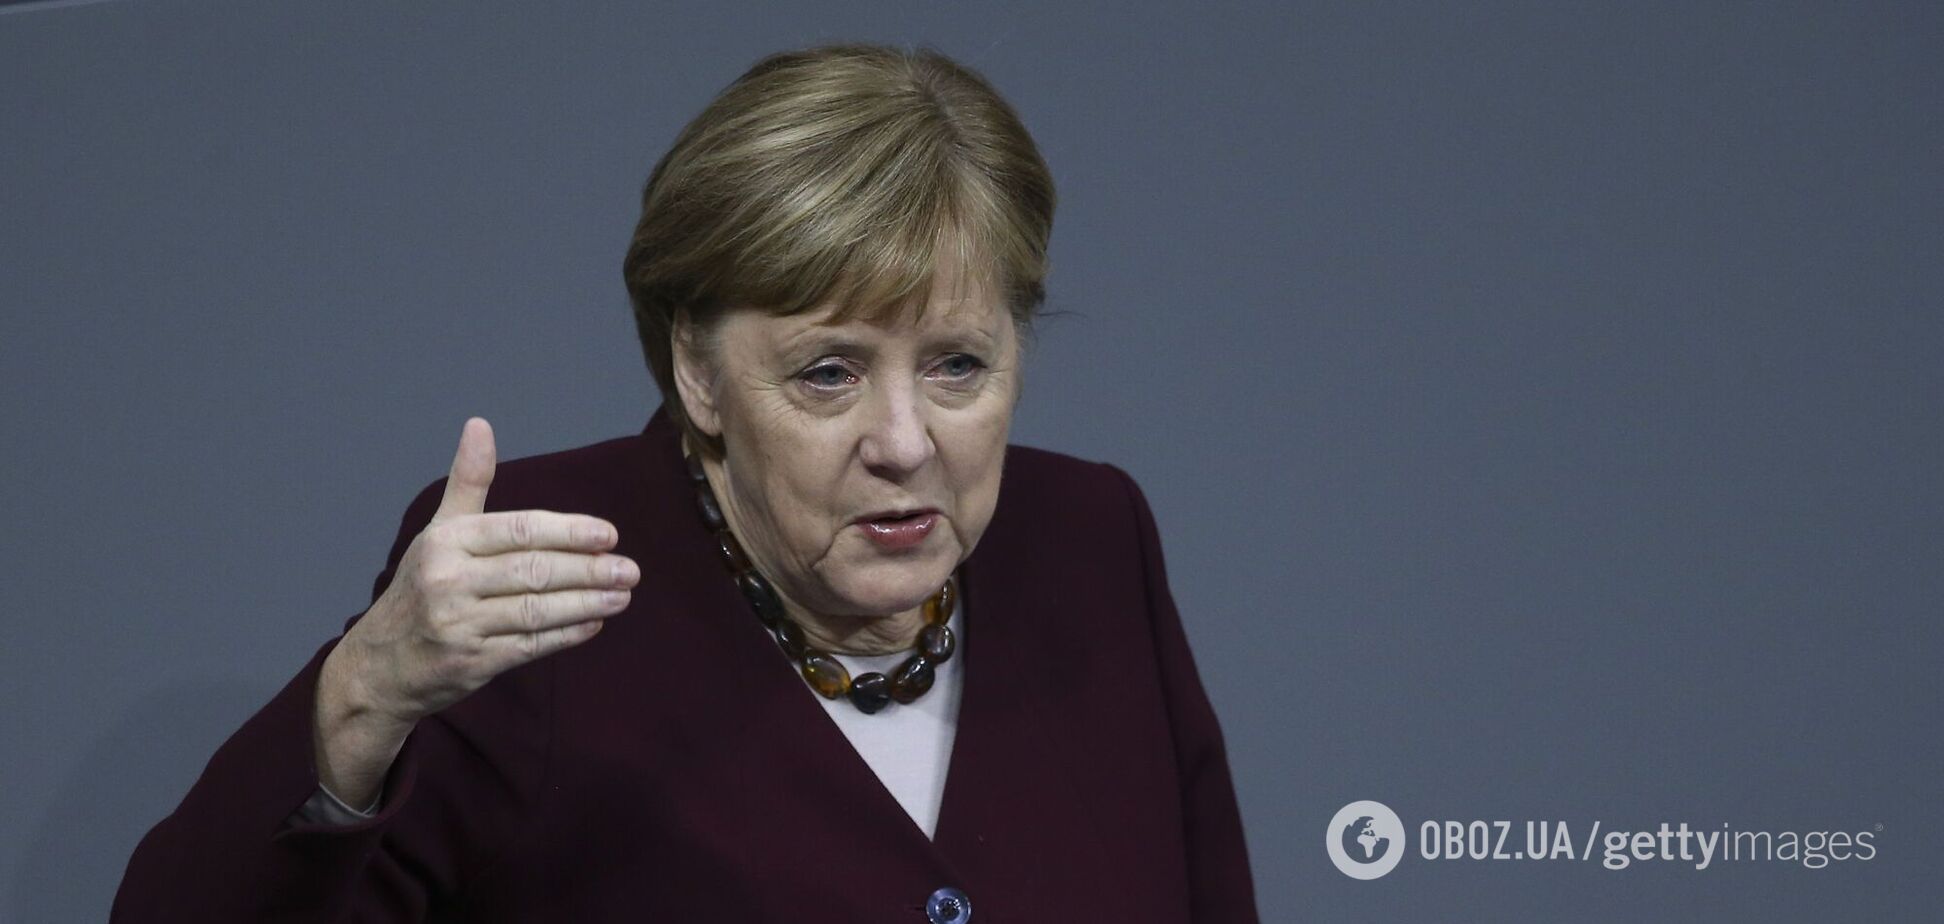 Партія Меркель історично програла вибори у двох регіонах Німеччини і знайшла винних